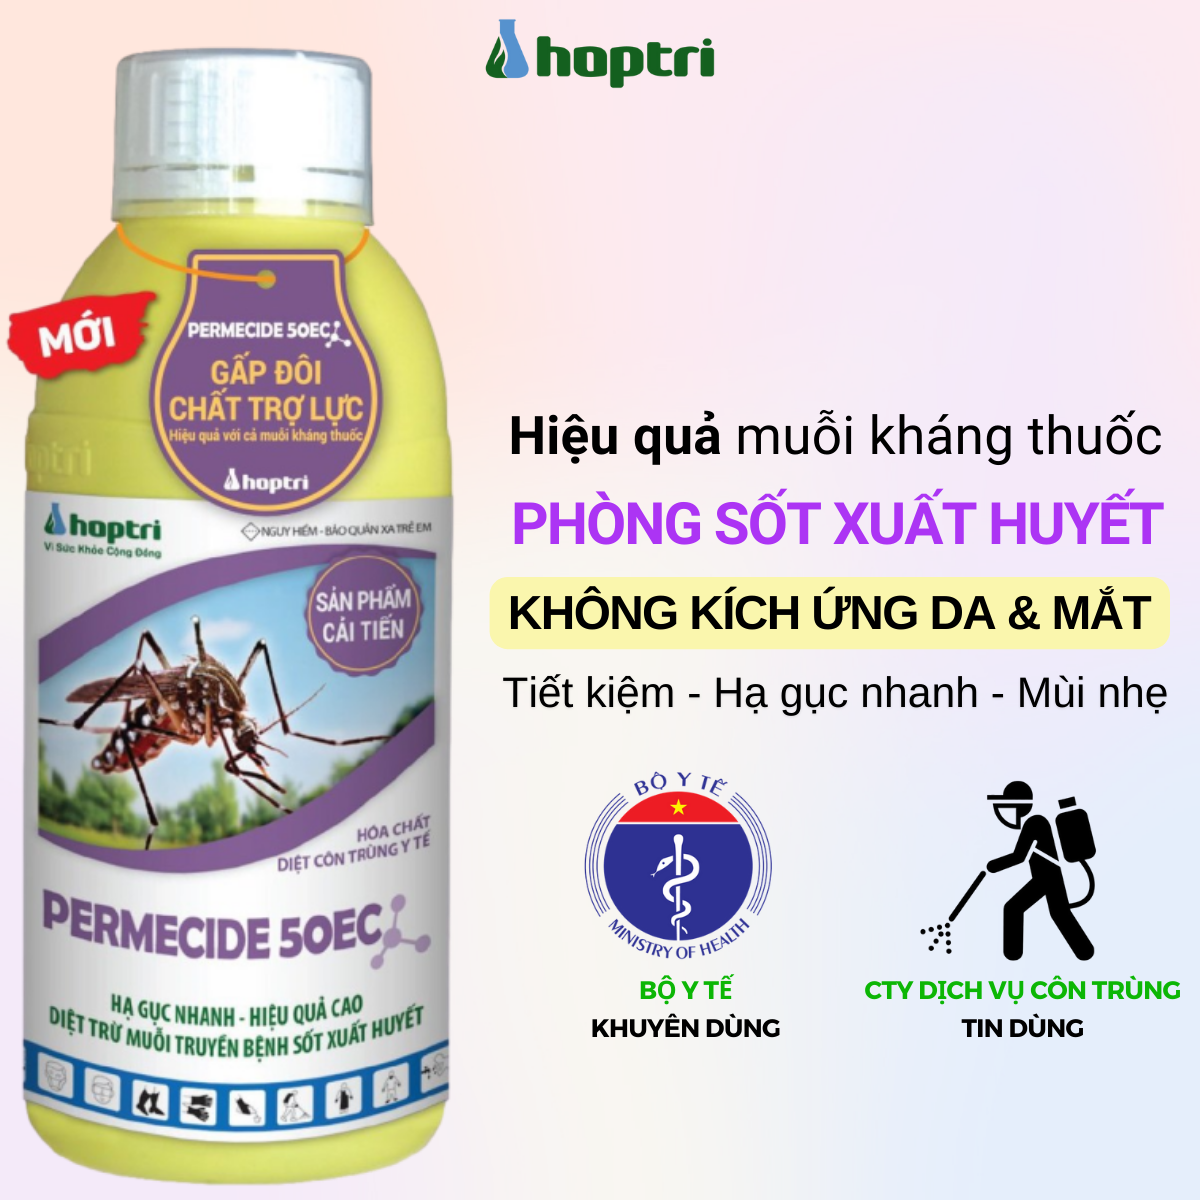 Thuố diệt côn trùng y tế Permecide 50EC 1 lít Hợp Trí hiệu quả xịt chống